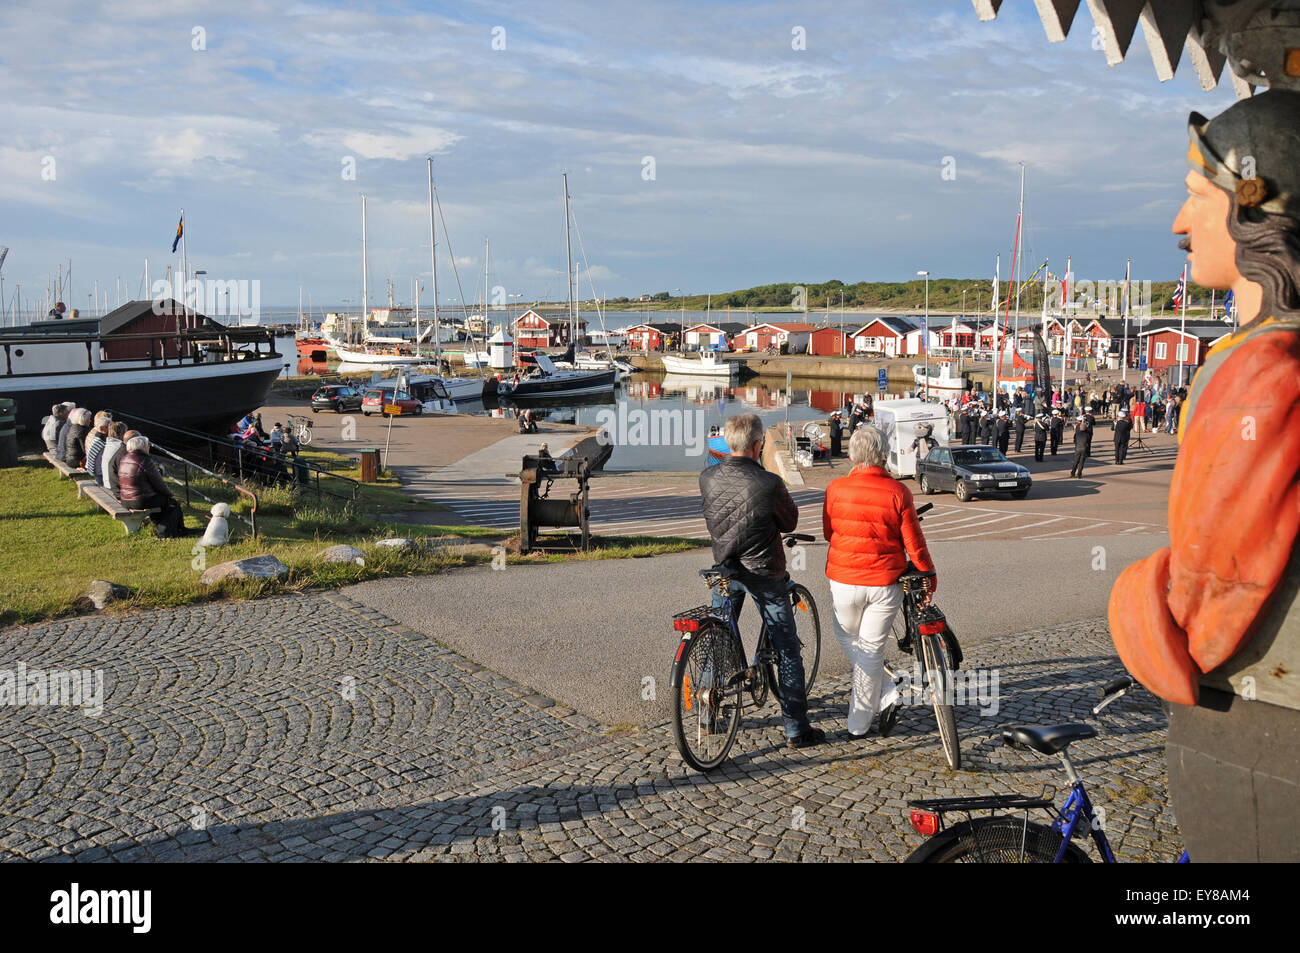 Port et bateaux et visiteurs à West Coast Village de Torekov à Malmö dans le sud de la Suède Banque D'Images